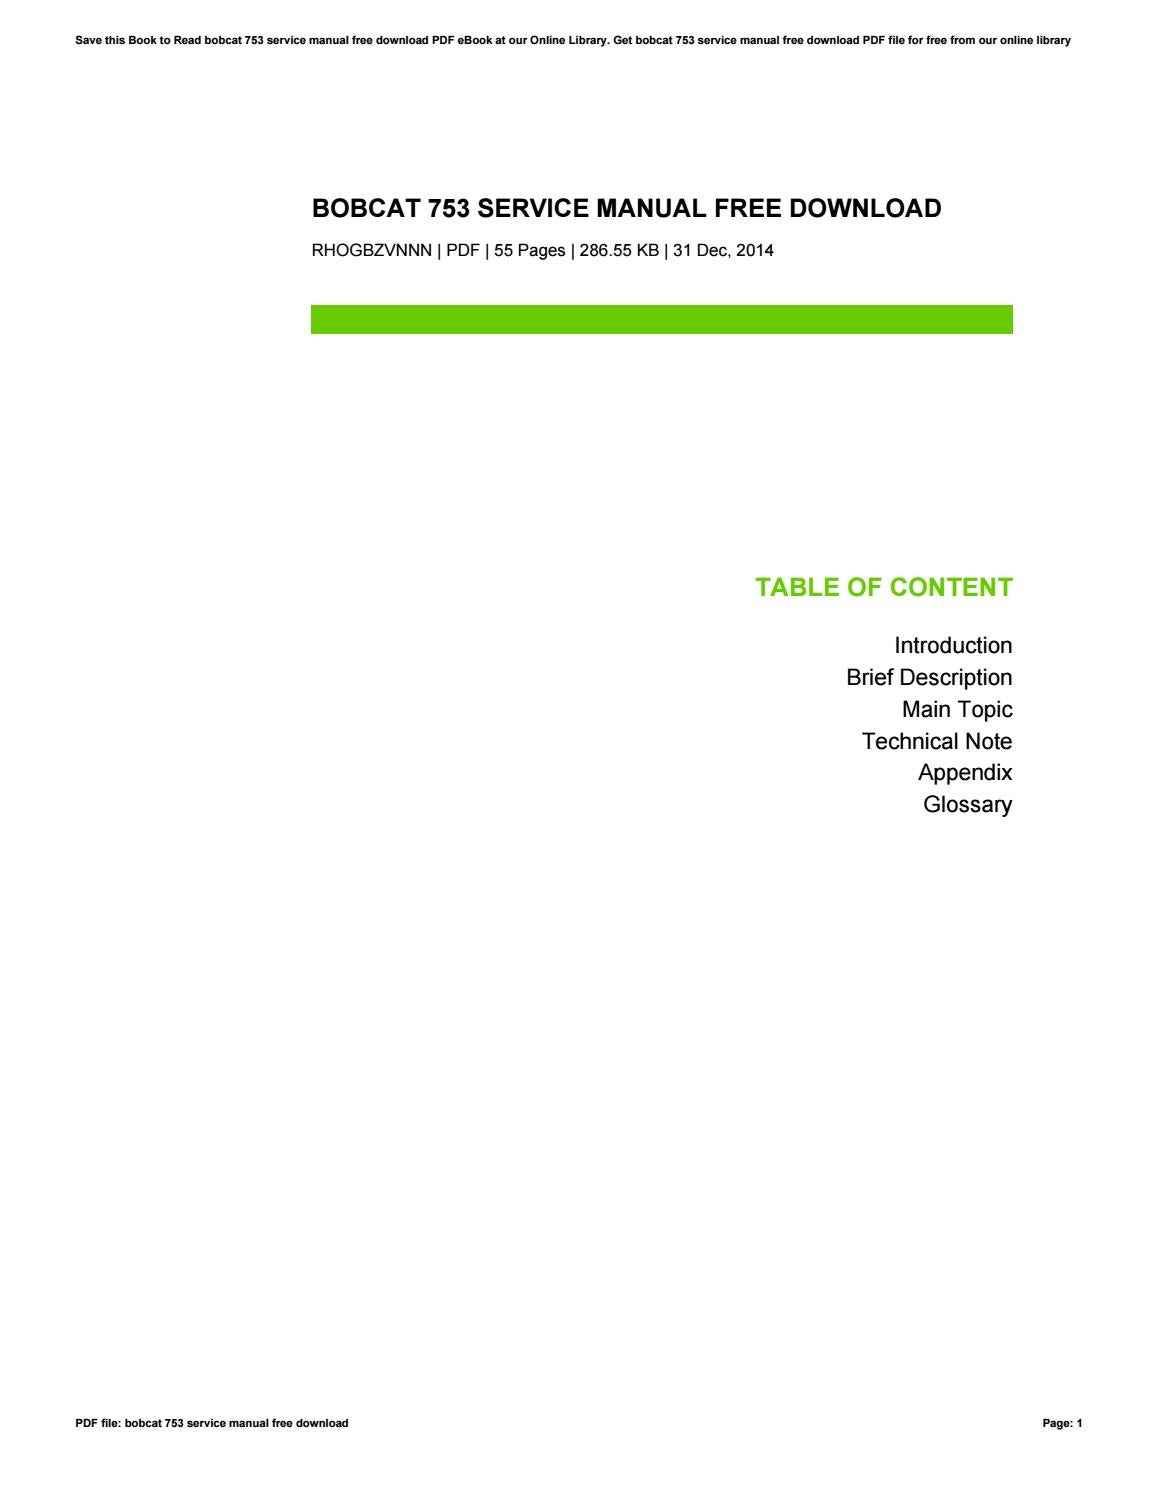 Bobcat 753 service manual full download